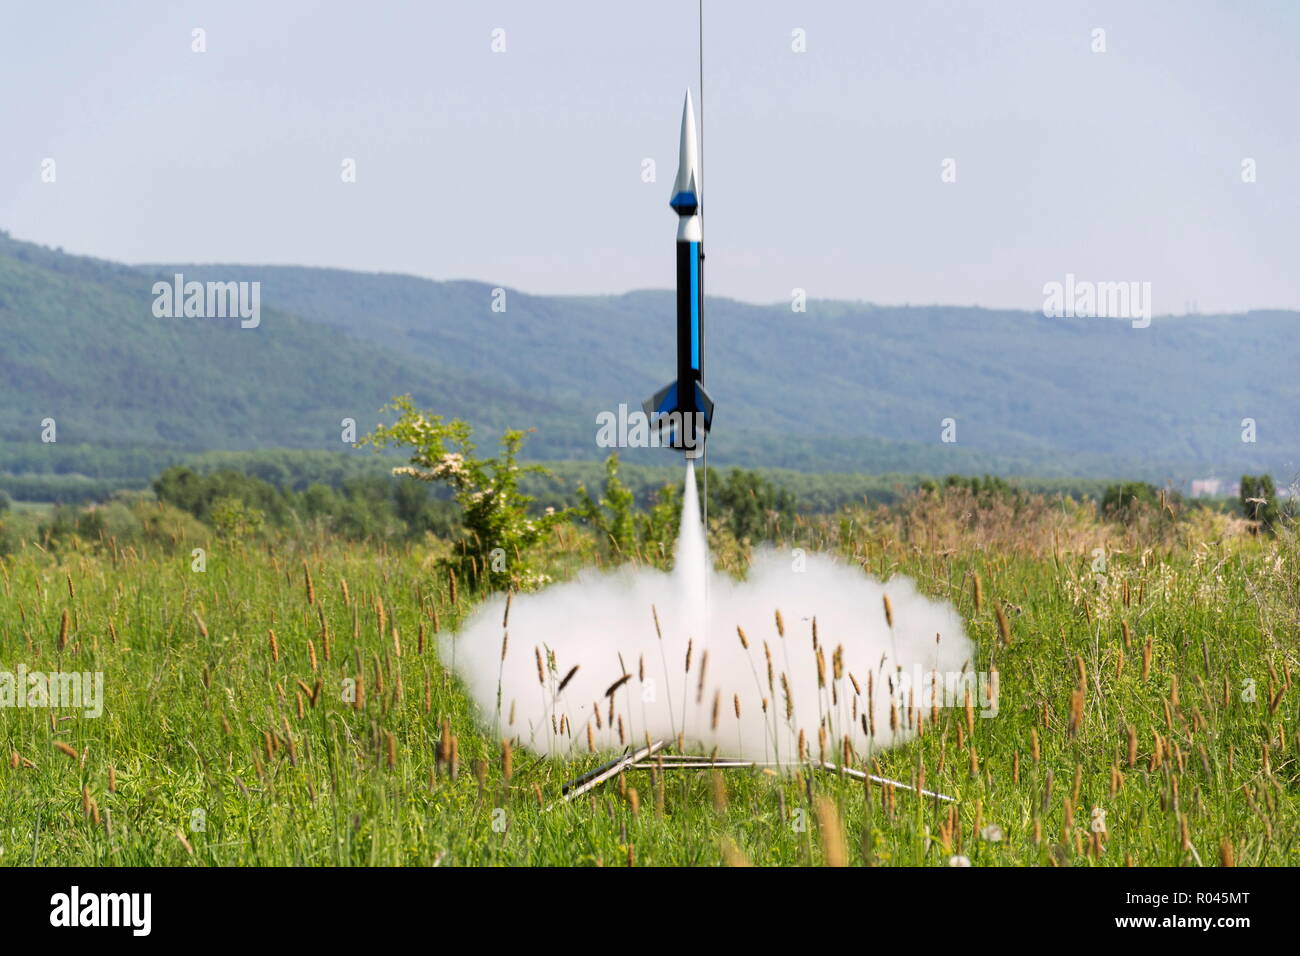 Modelo de cohetes listos para despegar el lanzamiento, día soleado de verano Foto de stock